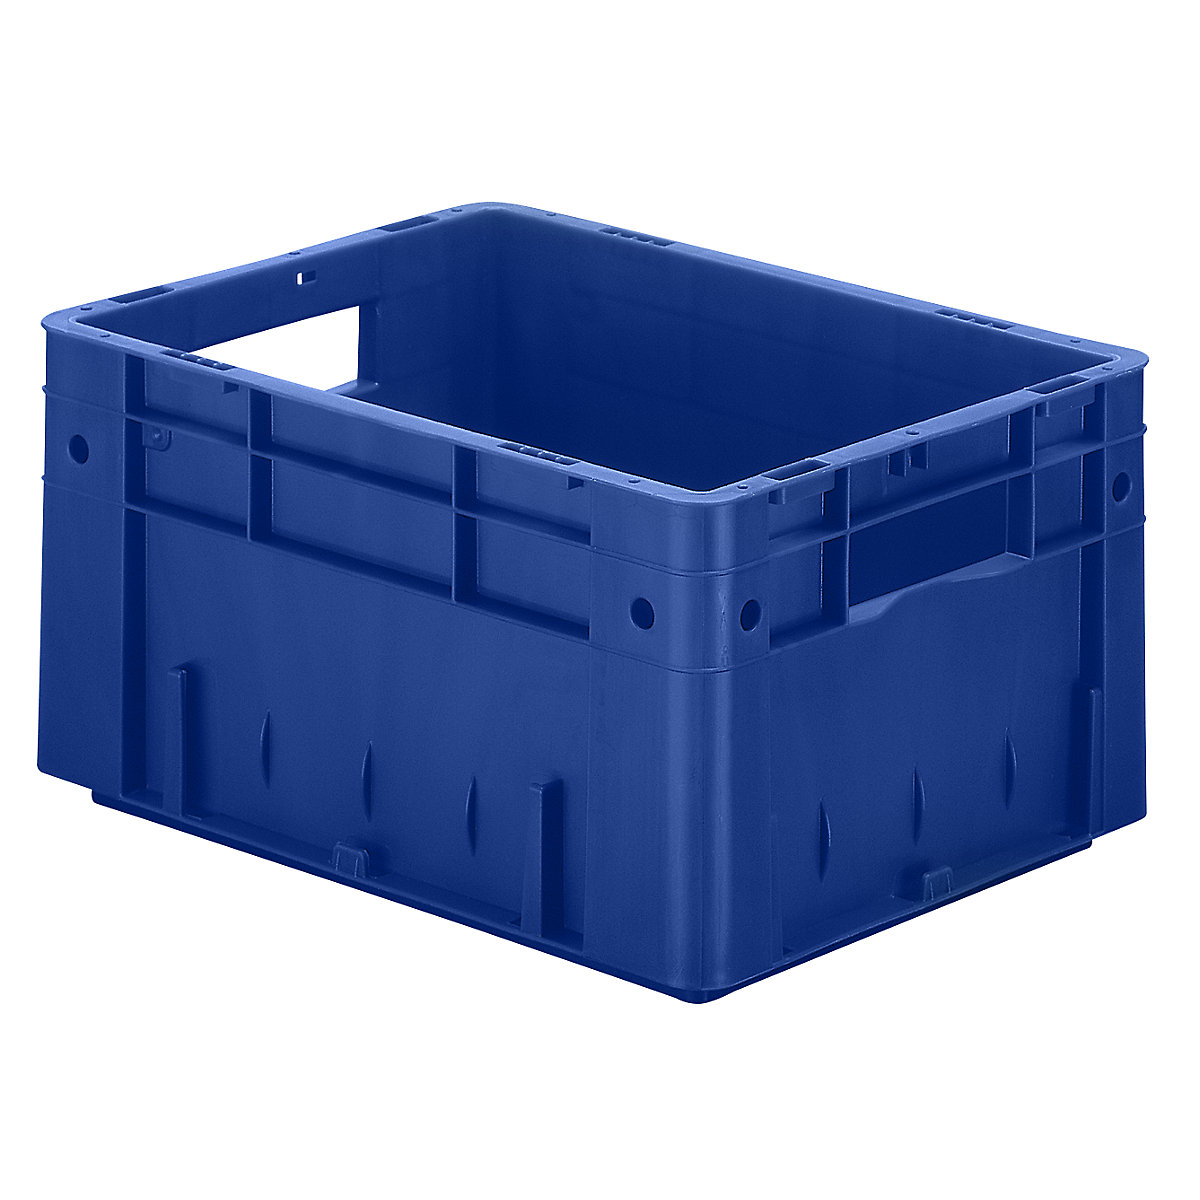 Schwerlast-Euro-Behälter, Polypropylen, Inhalt 17,5 l, LxBxH 400 x 300 x 210 mm, Wände geschlossen, Boden geschlossen, blau, VE 4 Stk